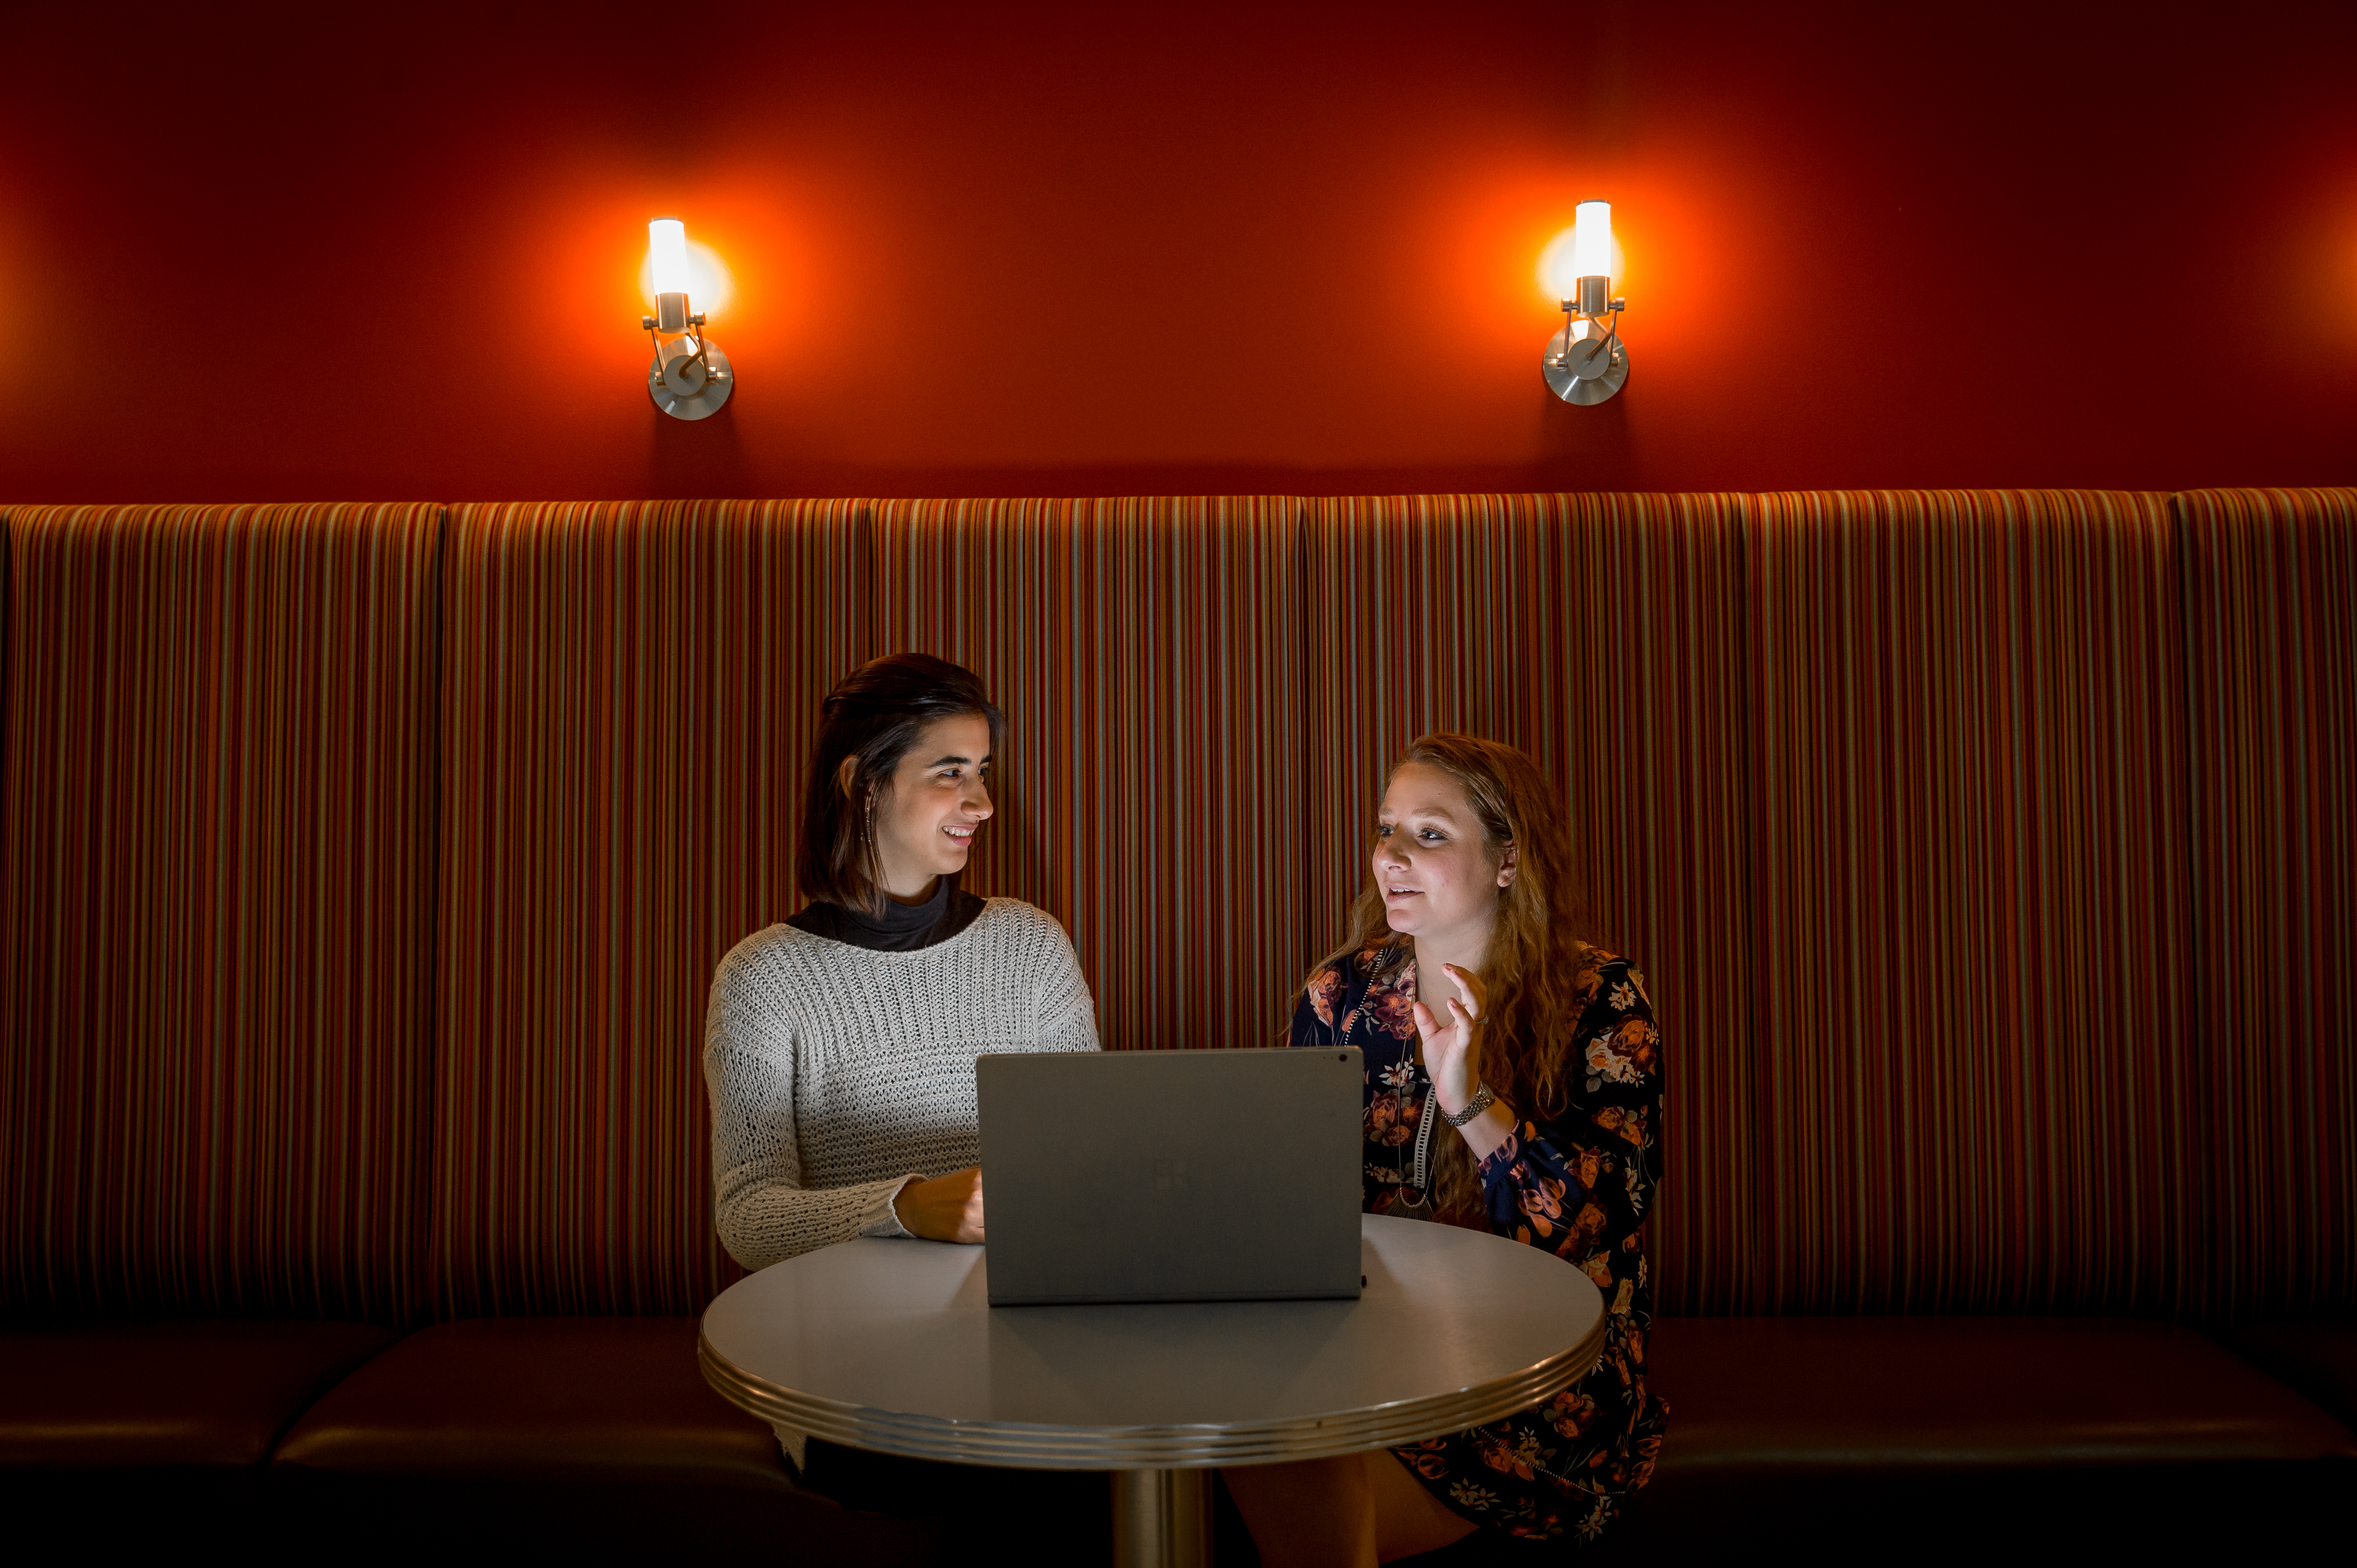 Edaena Salinos Jasso and Heather Shapiro talk around a laptop